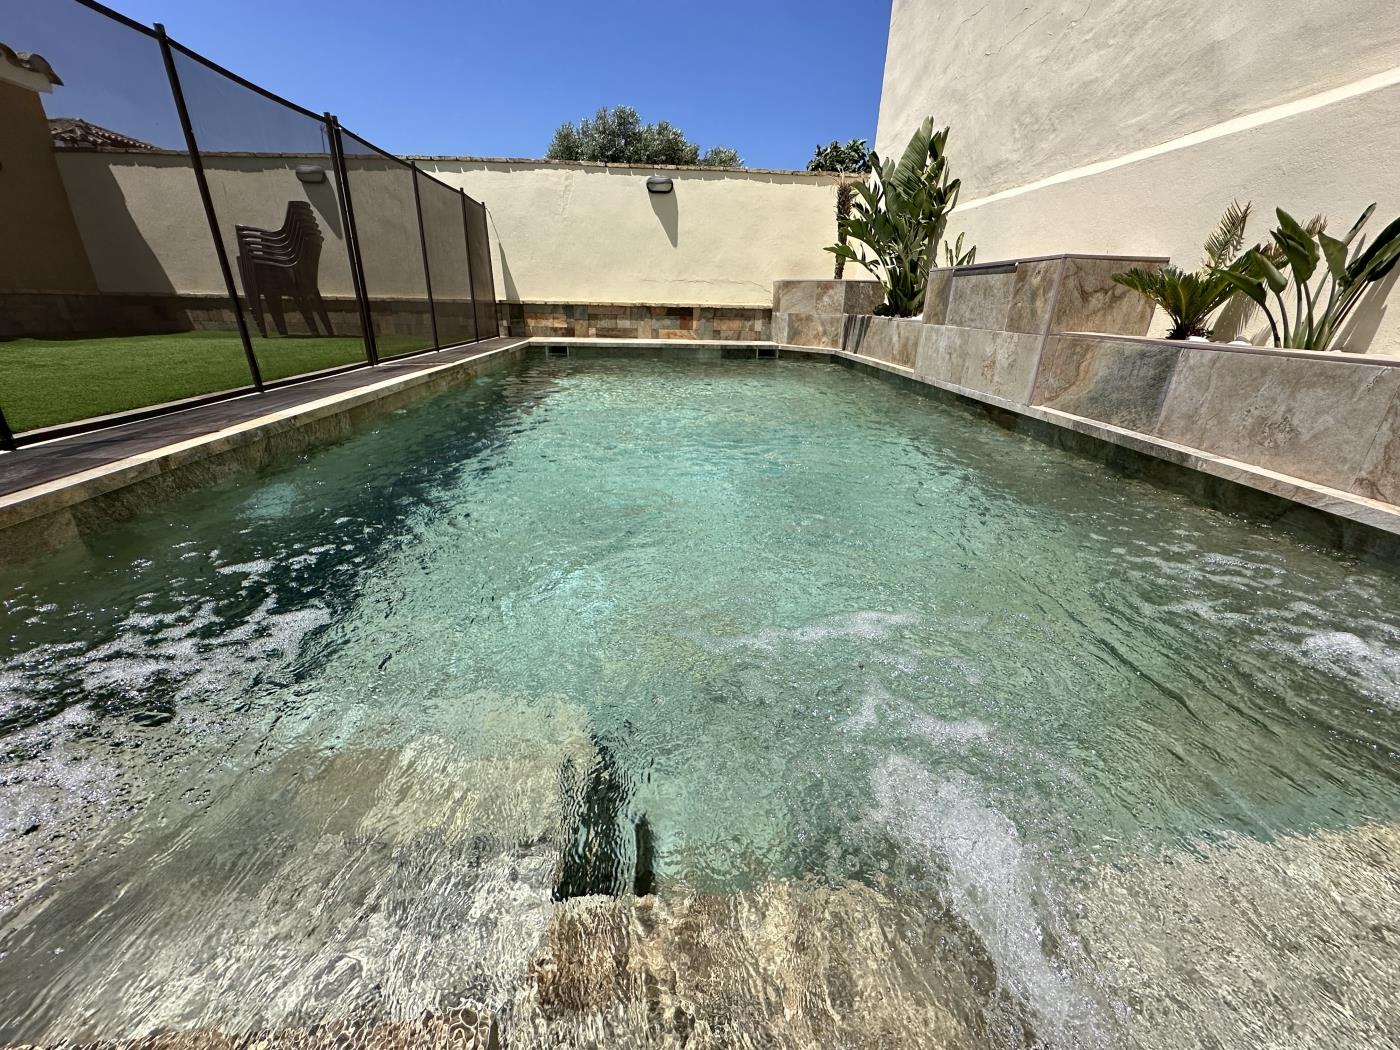 Ref Villa El Olivo. Moderno chalet con piscina en Chiclana de la frontera